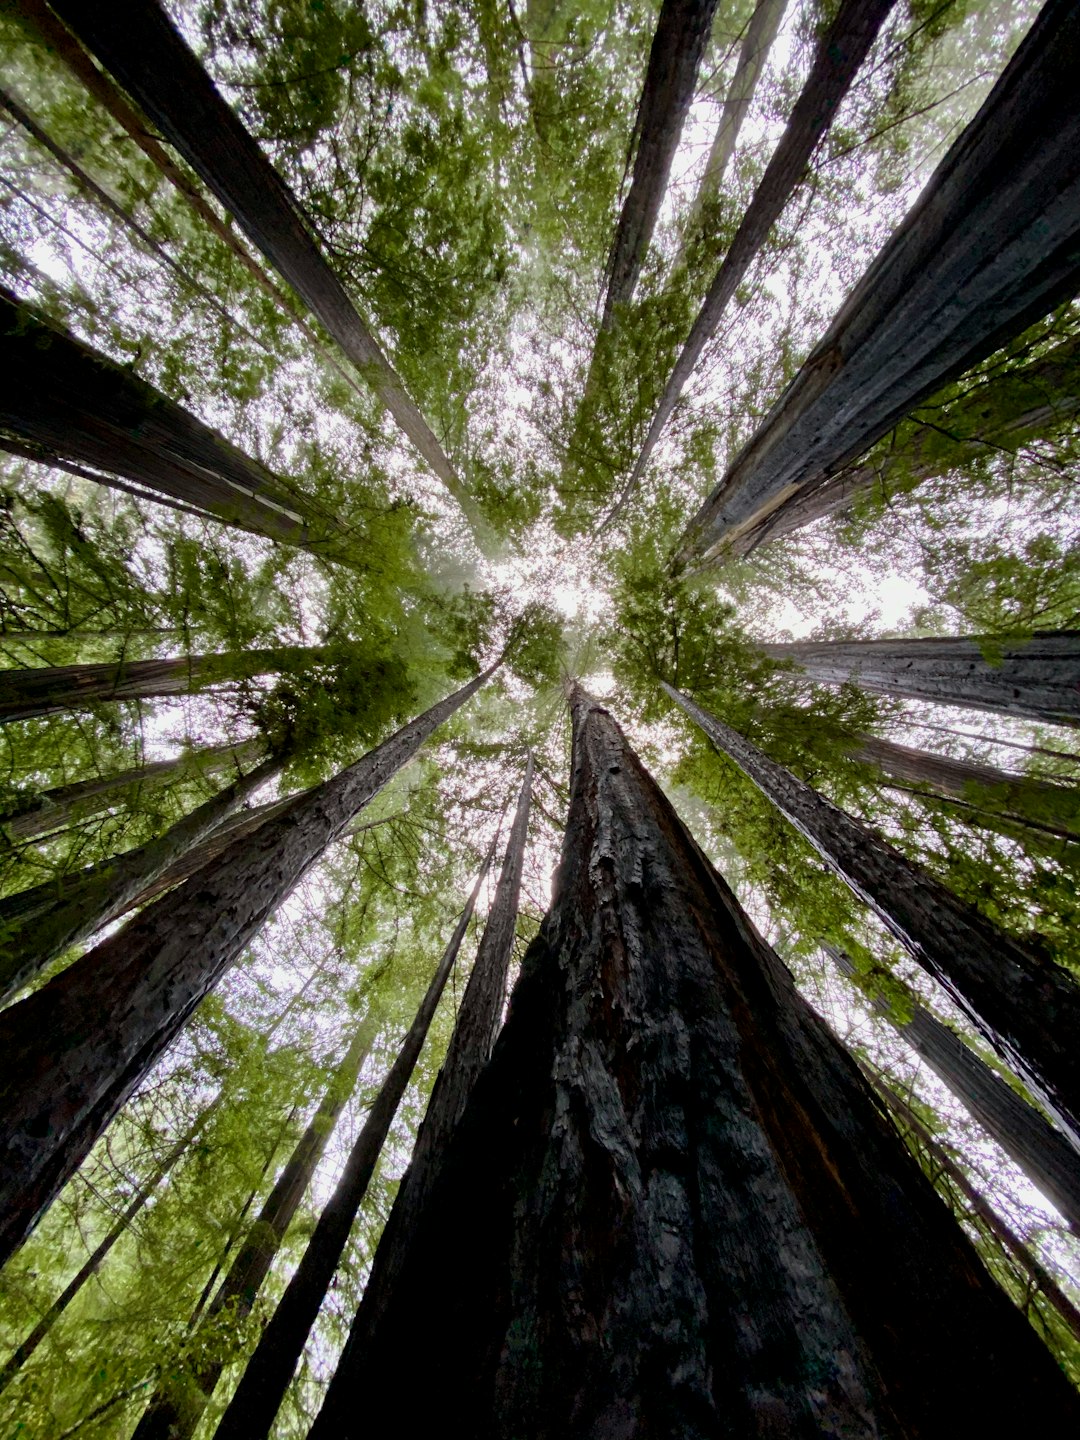 Redwoods at Big Basin Redwoods State Park